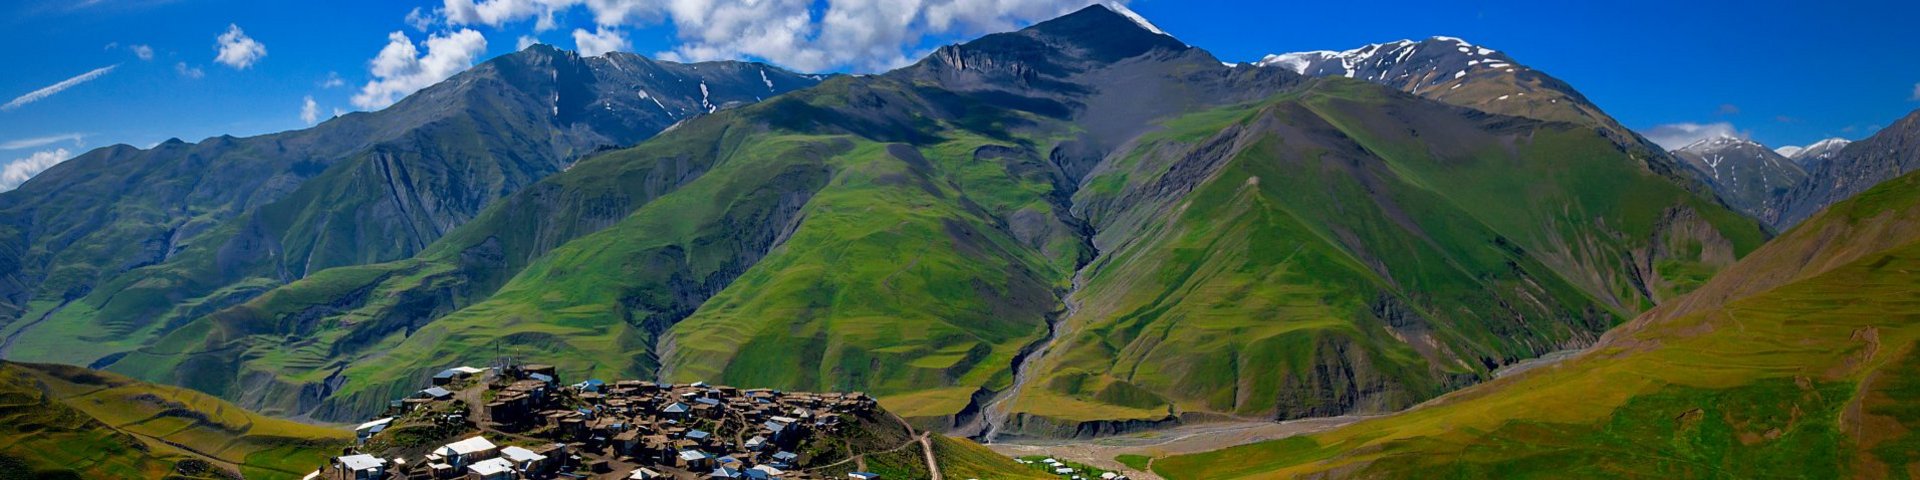 Blick auf das Bergdorf Xinaliq im Grossen Kaukasus in Aserbaidschan